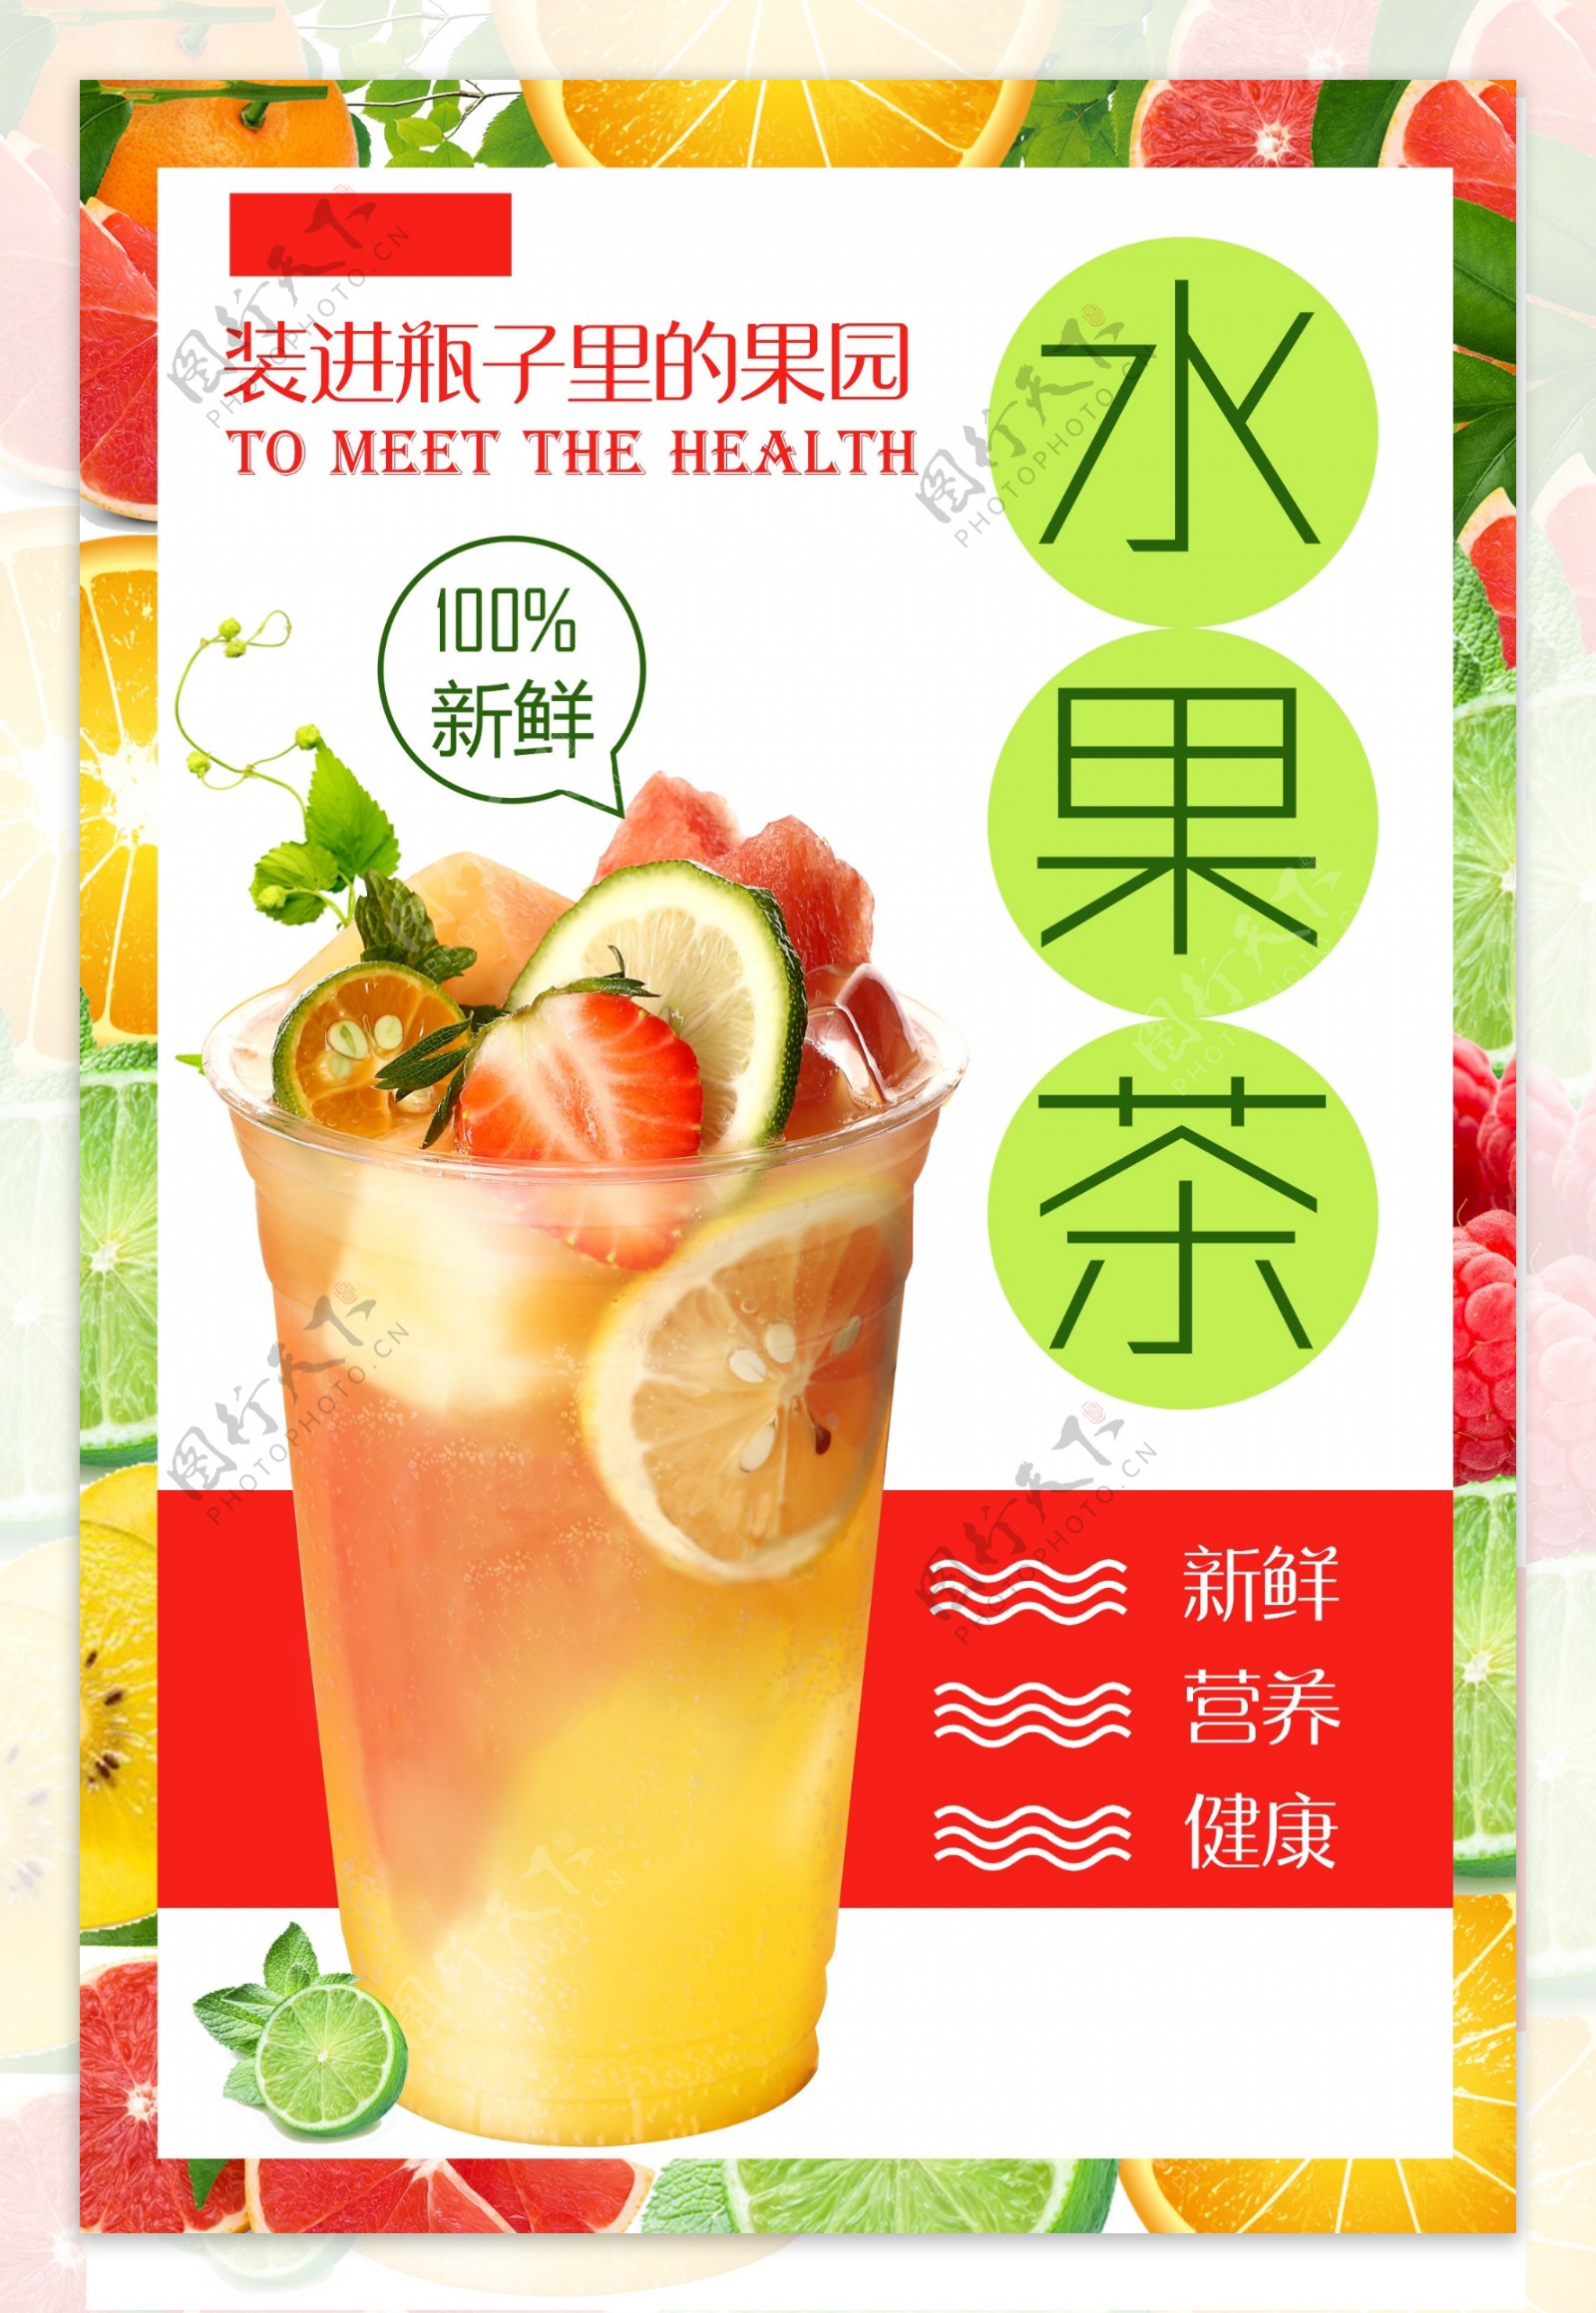 水果茶饮品饮料活动宣传海报素材图片